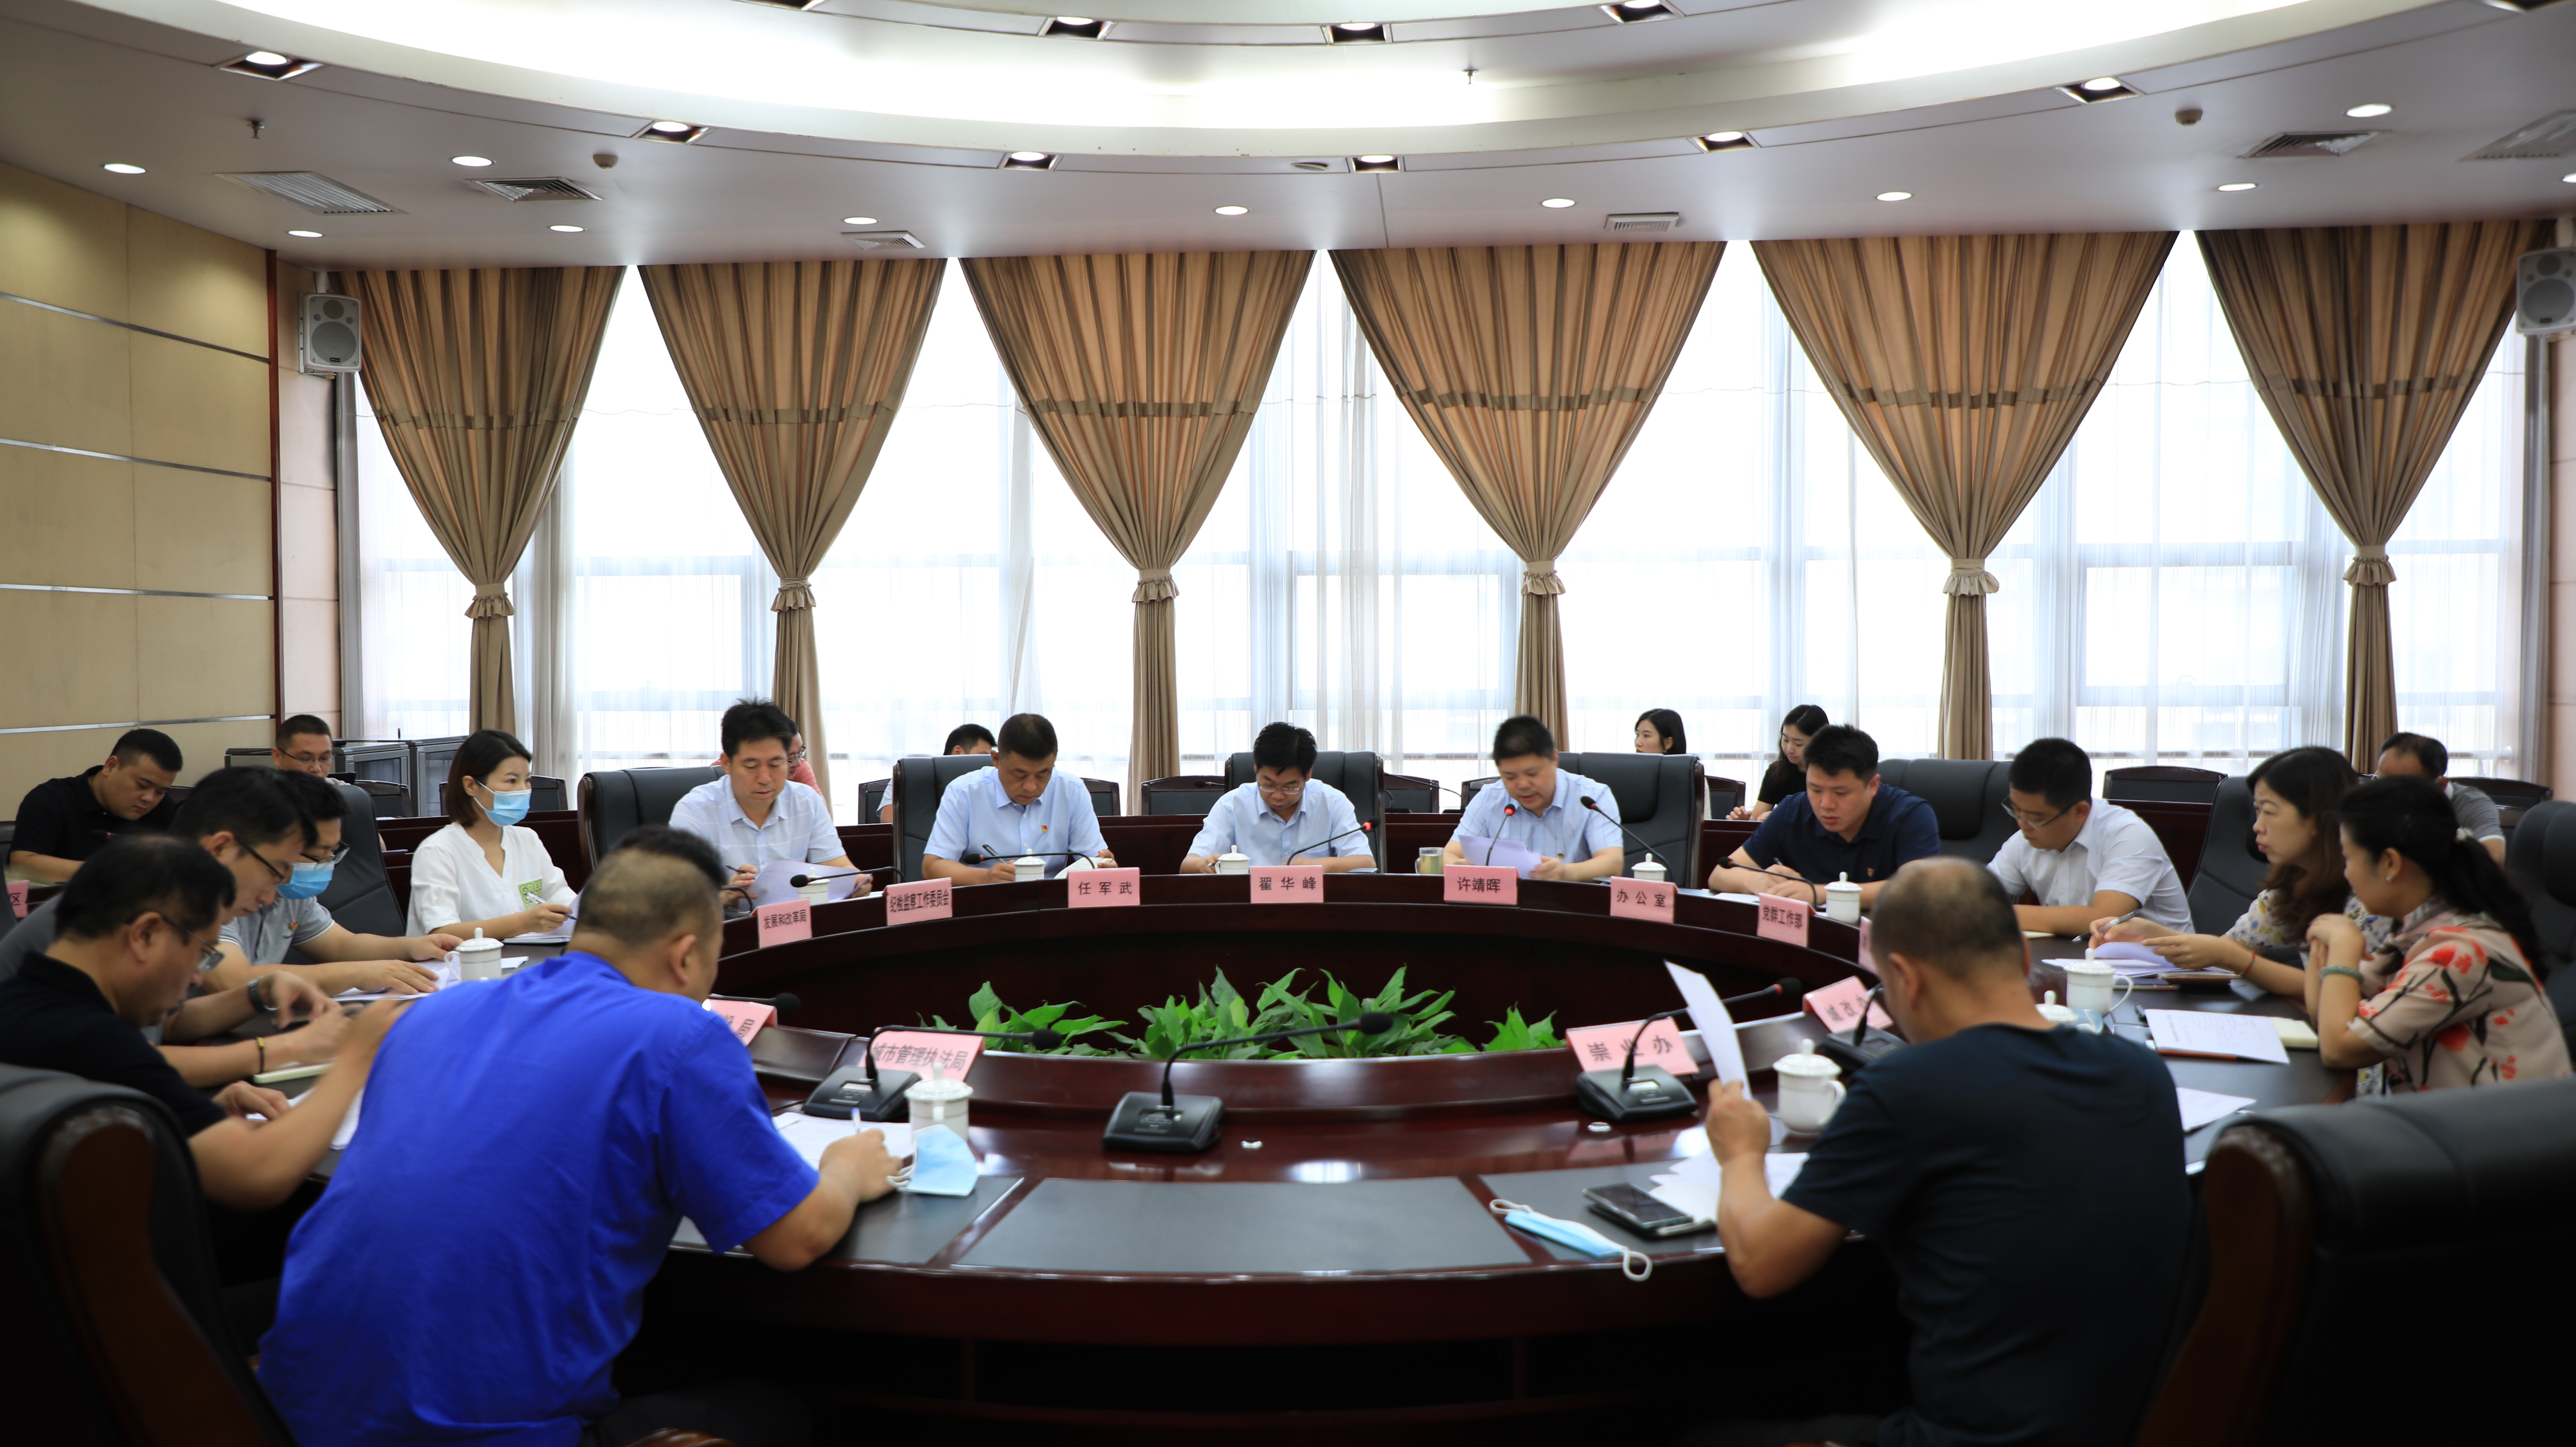 渭南高新区召开城市规划建设管理“三覆盖、四清零、五提升”工作推进会